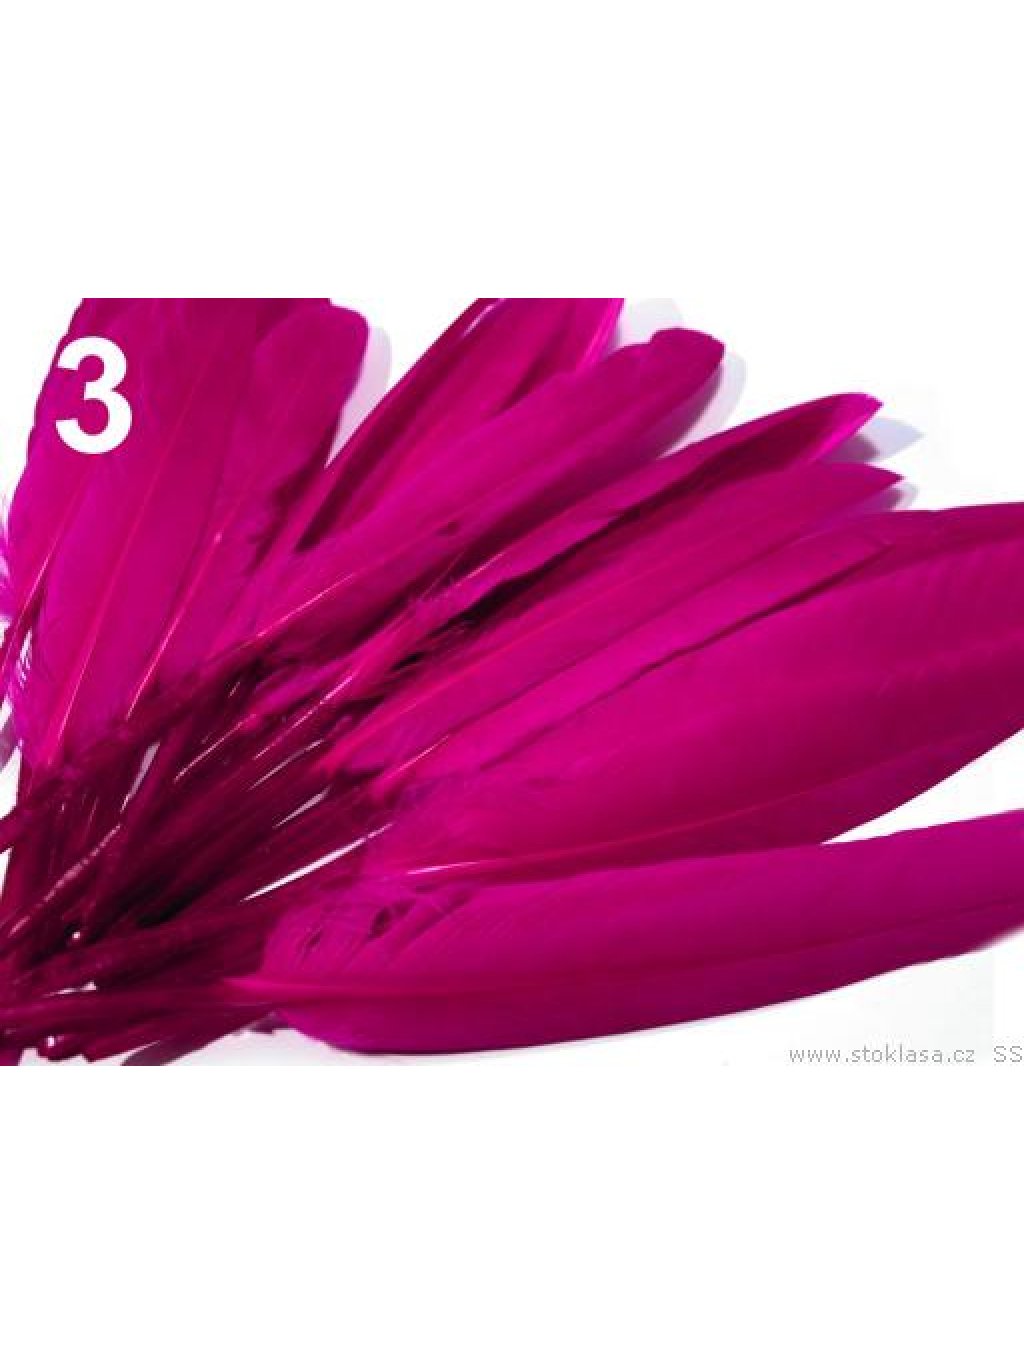 Kachní peří sytě růžové 9-14 cm